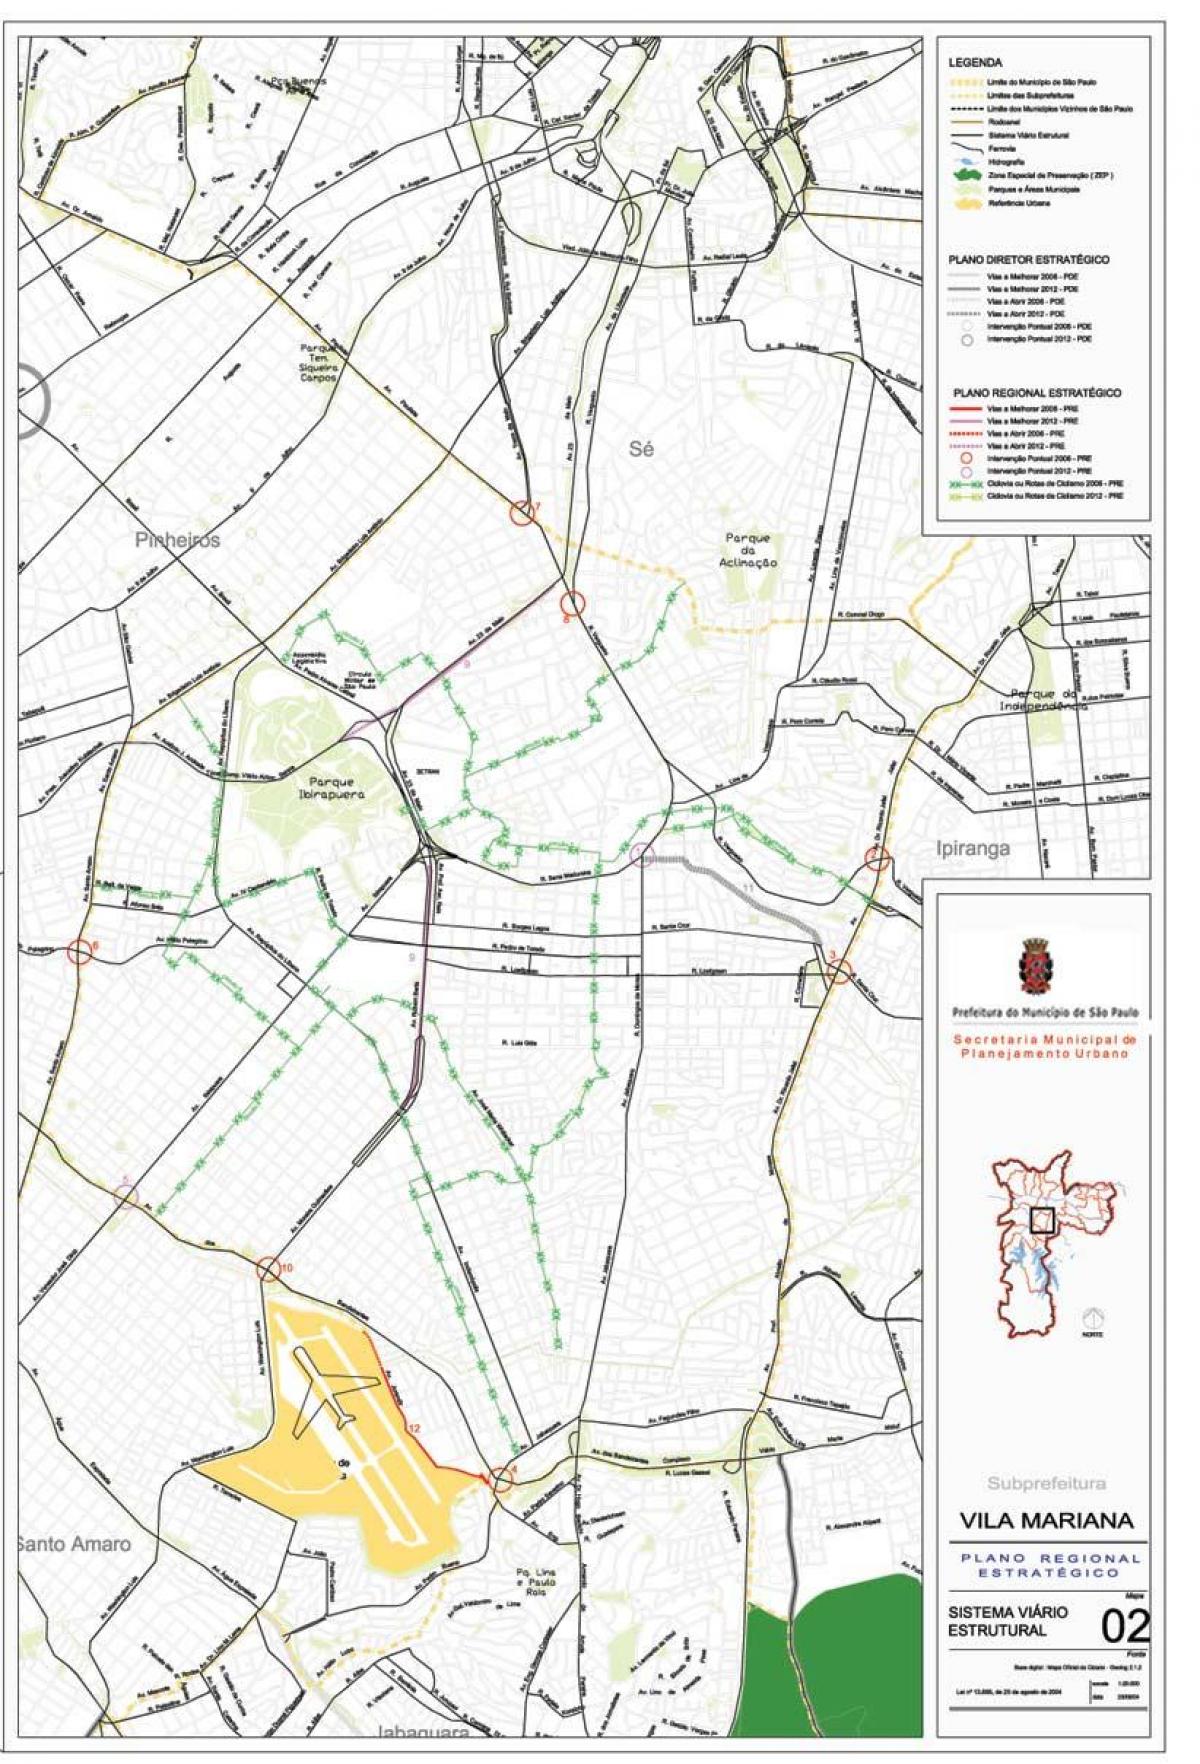 Peta Vila Mariana São Paulo - Jalan